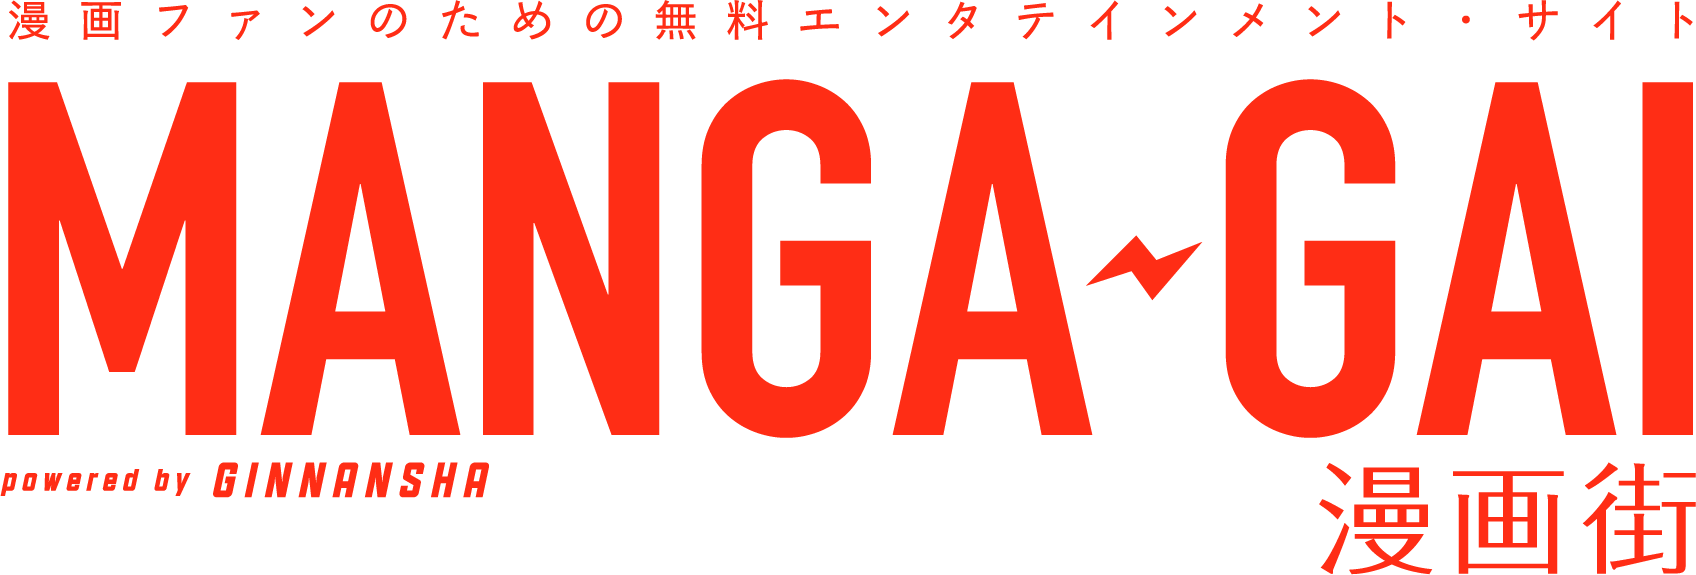 漫画ファンのための無料エンタテイメント・サイト 漫画街 MANGA-GAI powered by GINNANSHA